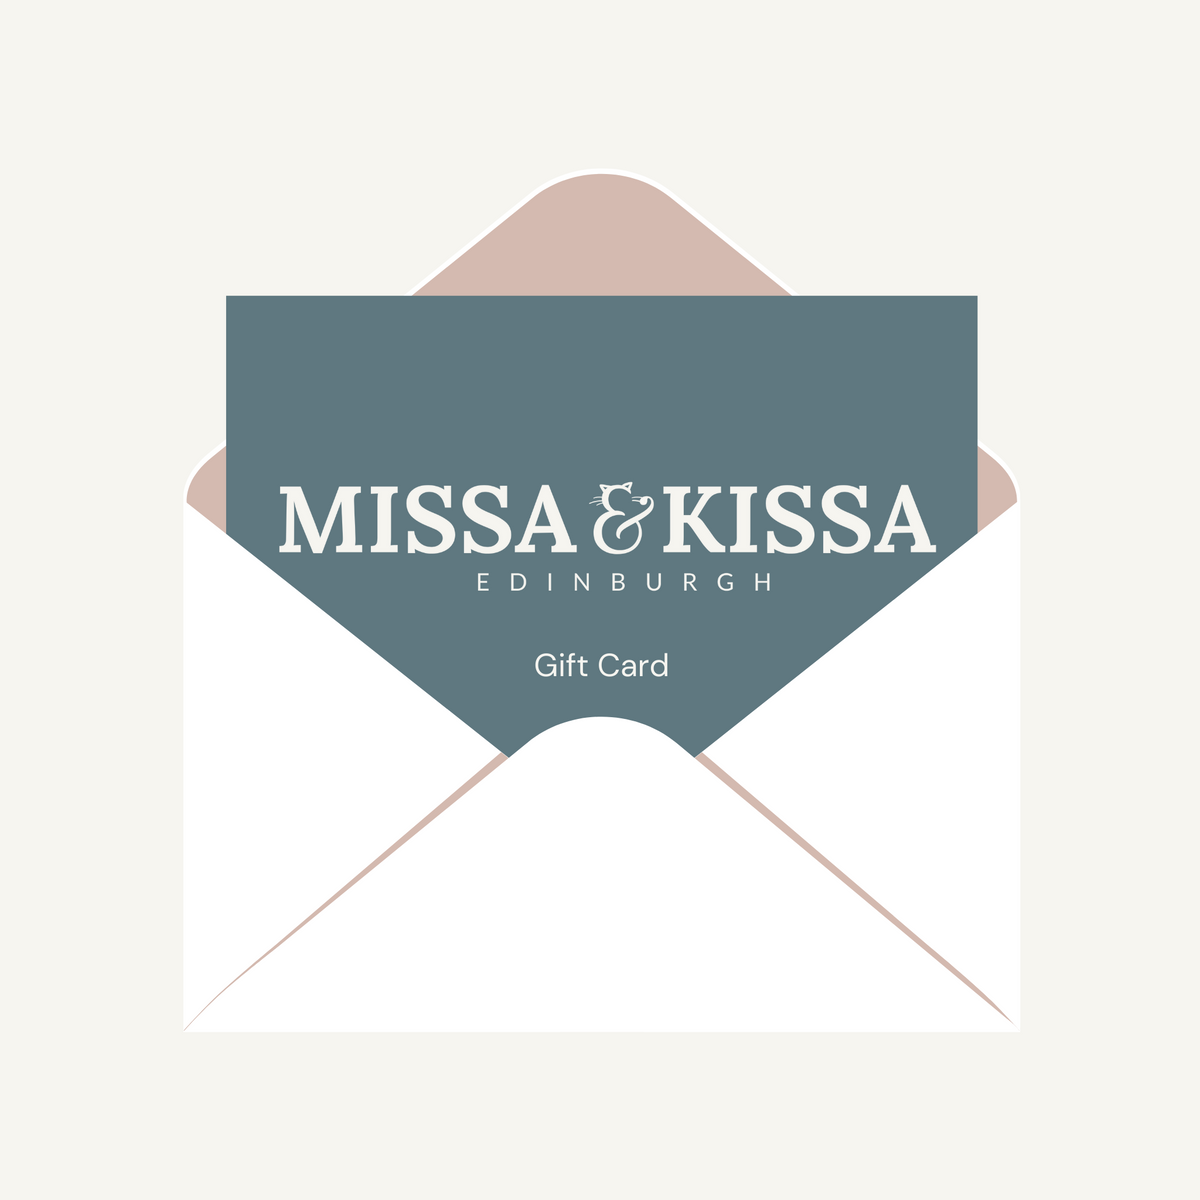 MISSA & KISSA Gift Card